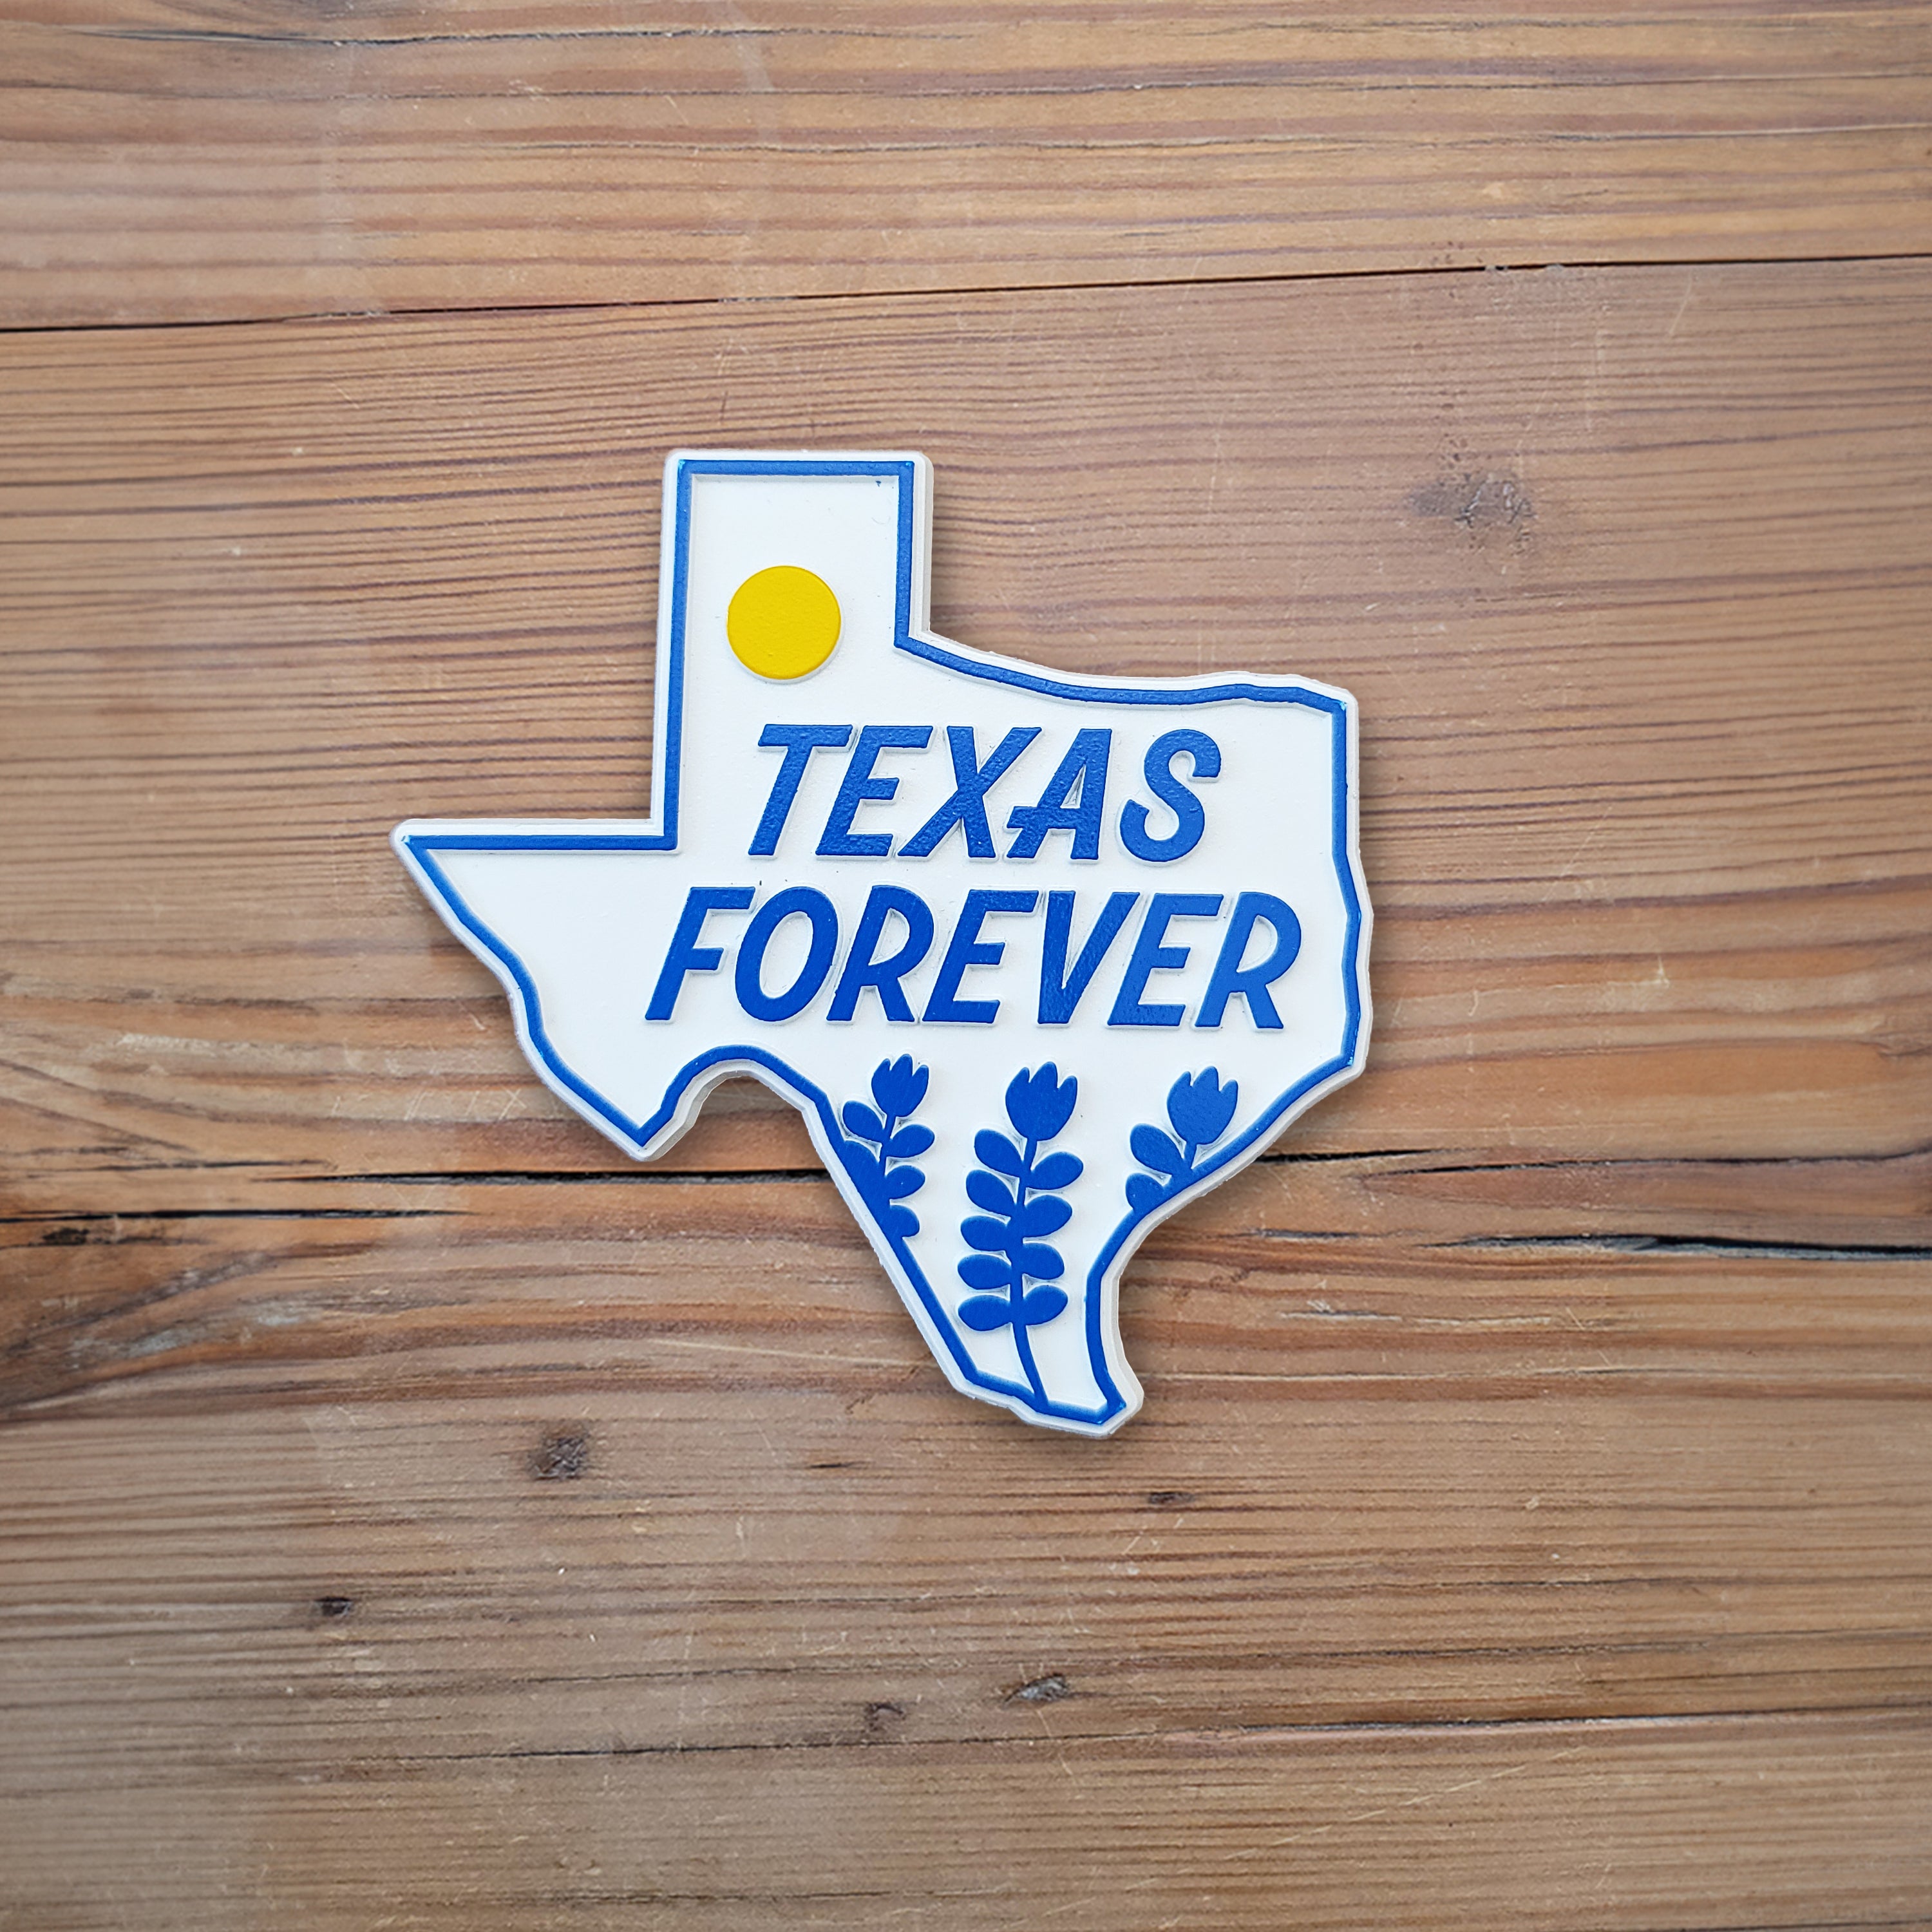 TexasForever.jpg